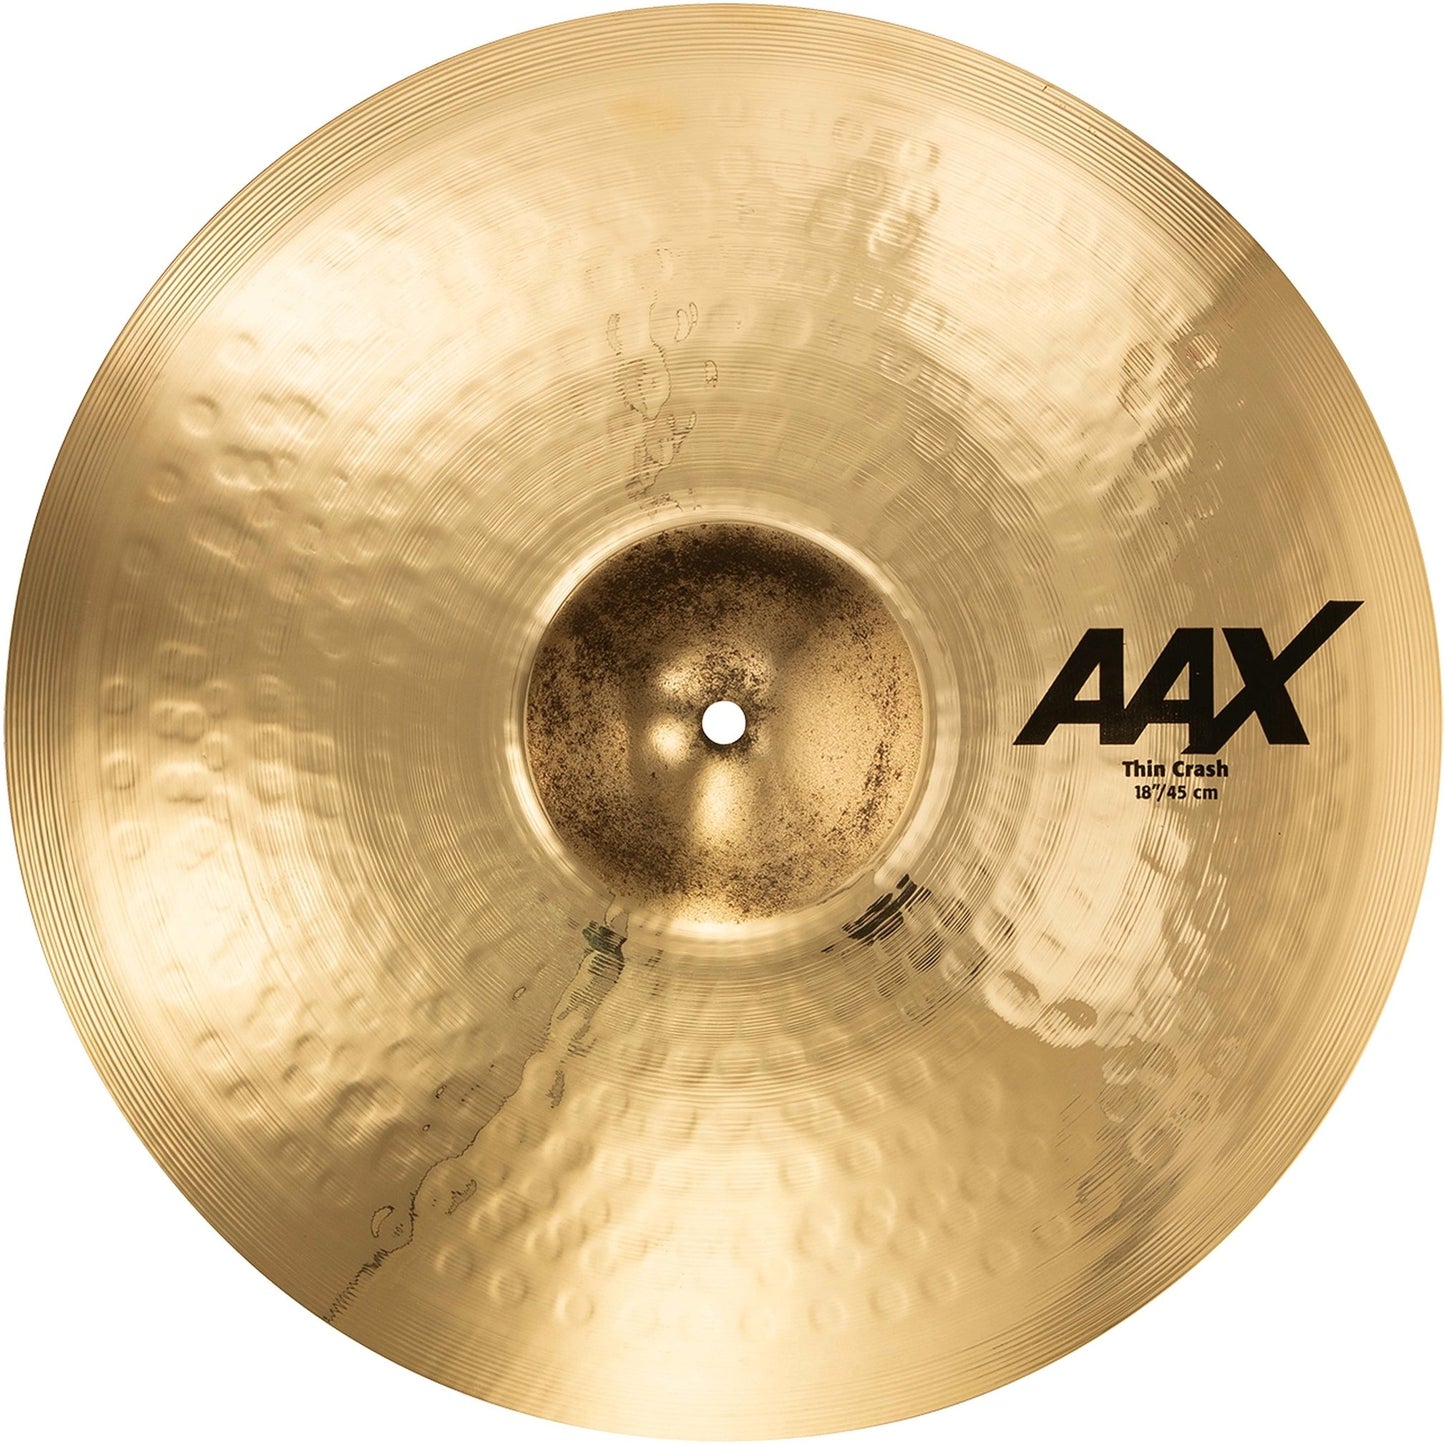 Sabian AAX Thin Crash Cymbal, 18 Inch